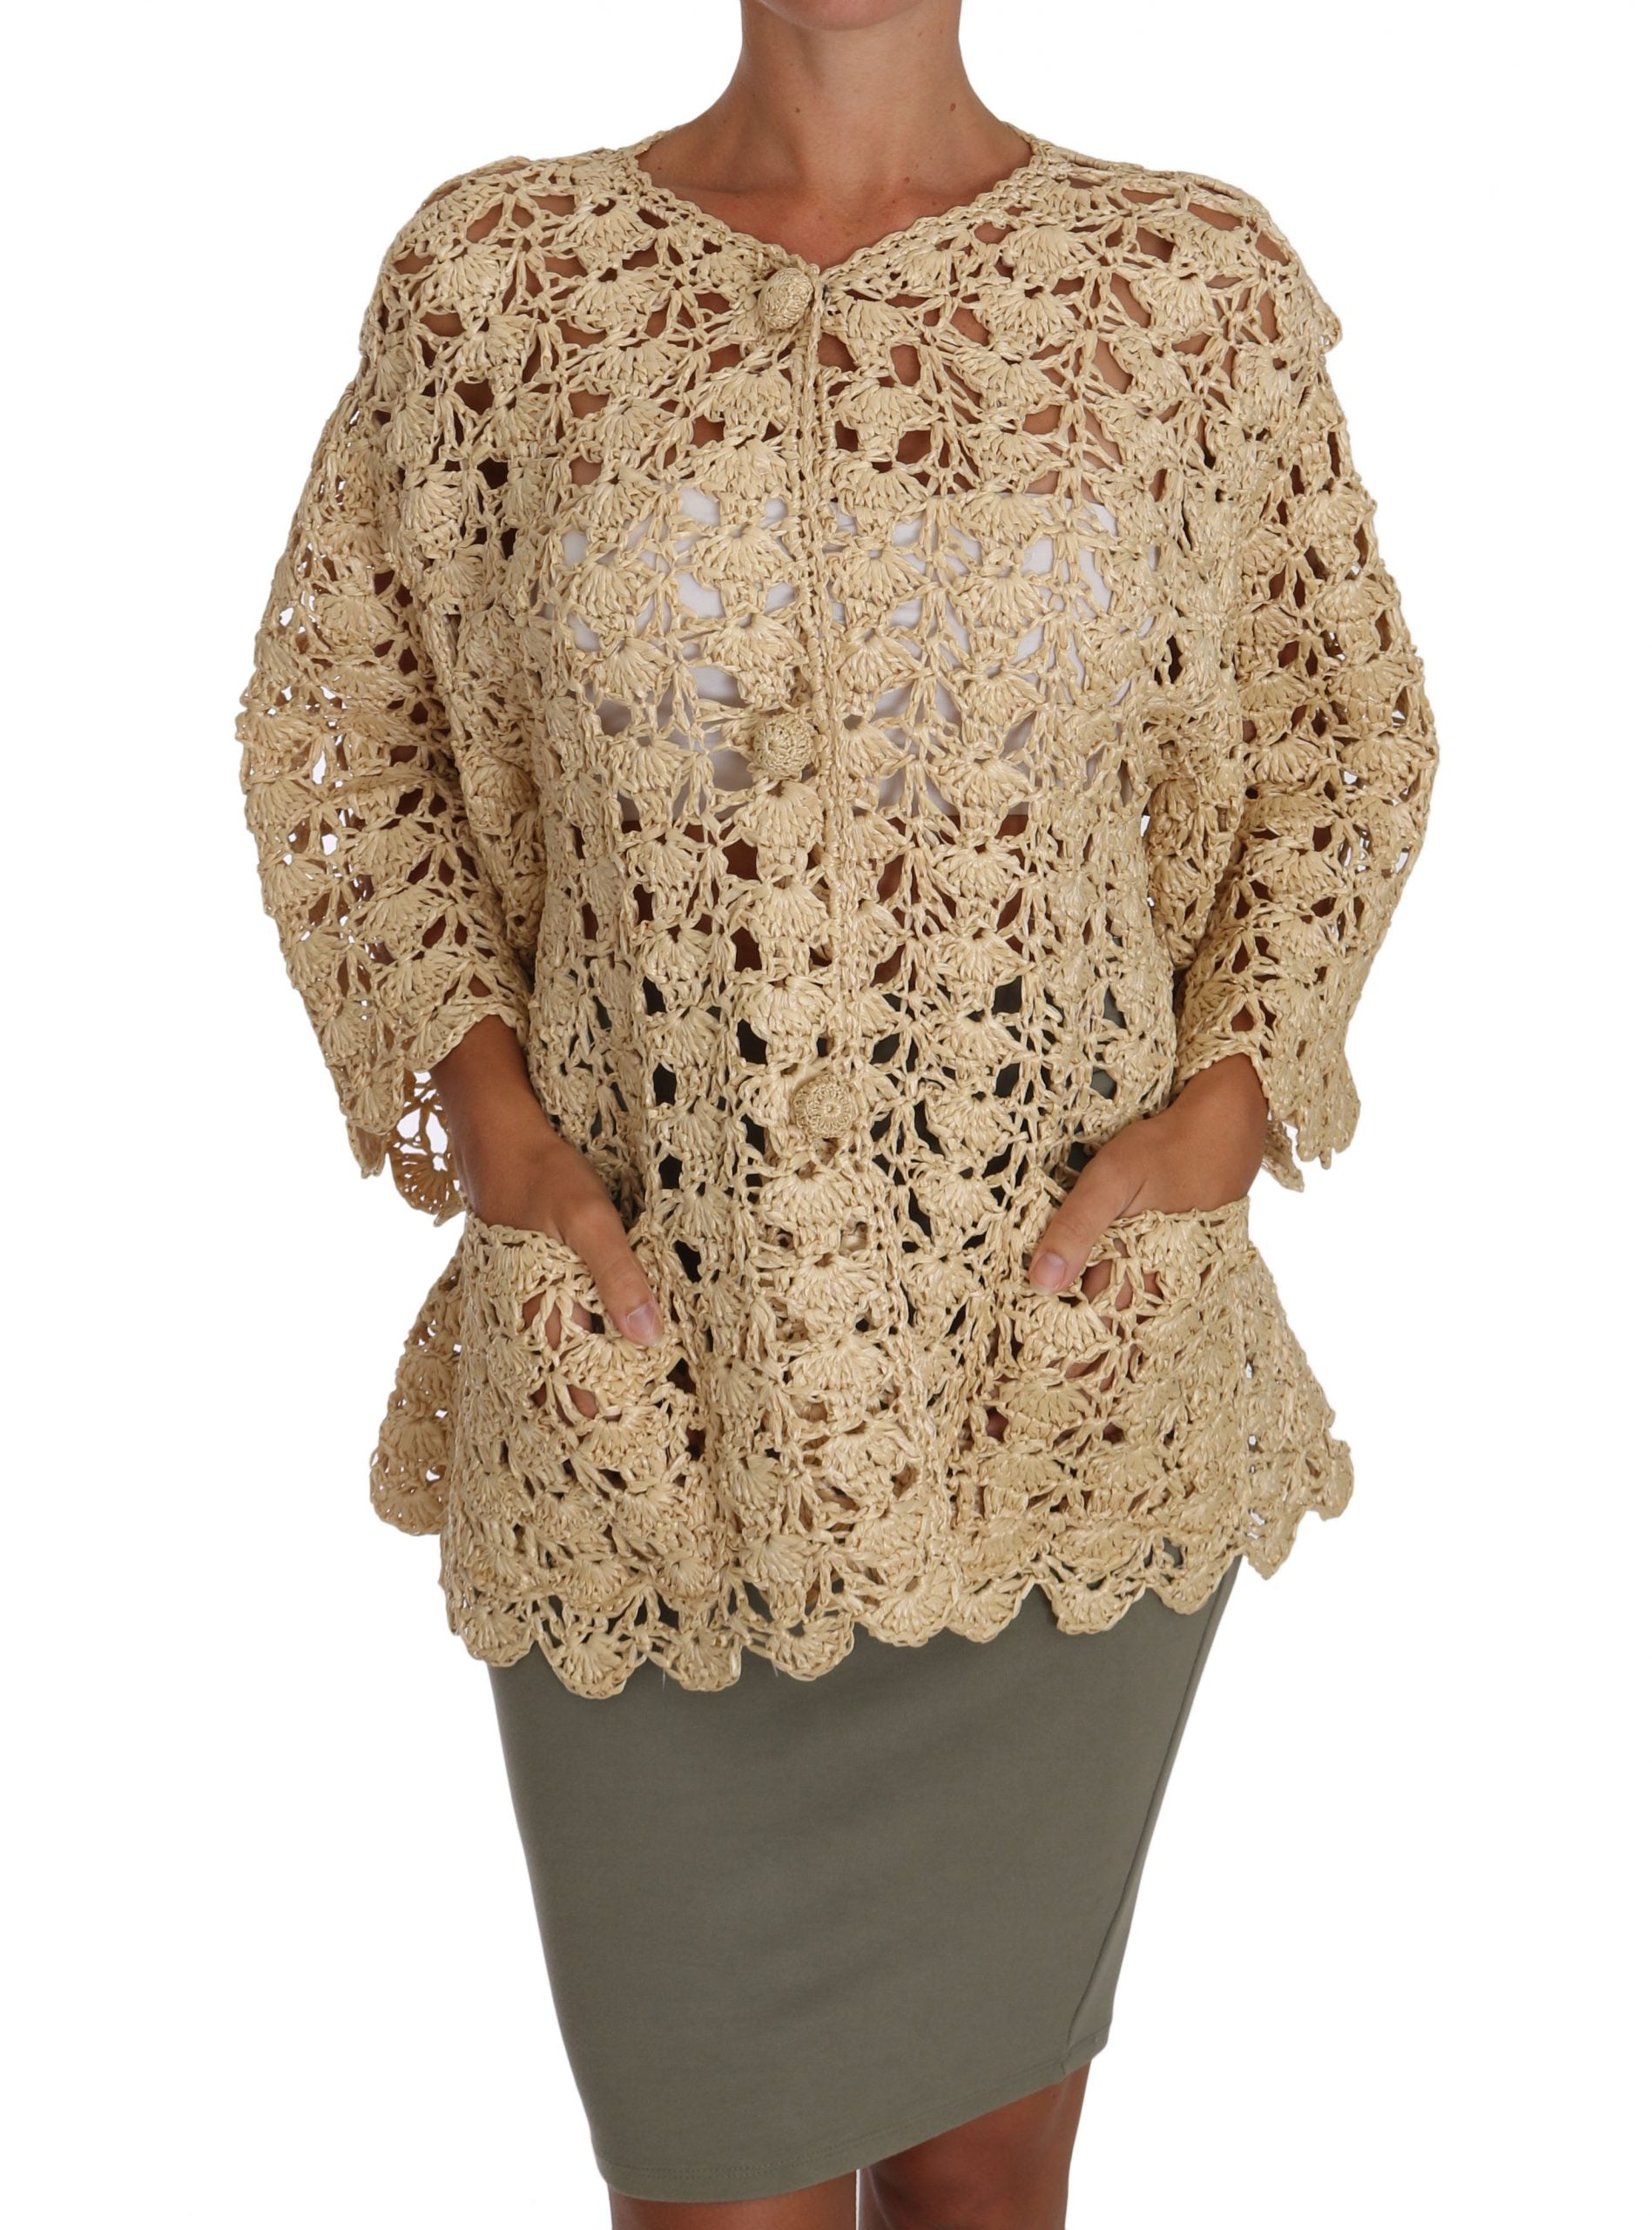 DOLCE & GABBANA Dolce & Gabbana  Cardigan Crochet Knitted Raffia Women's Sweater